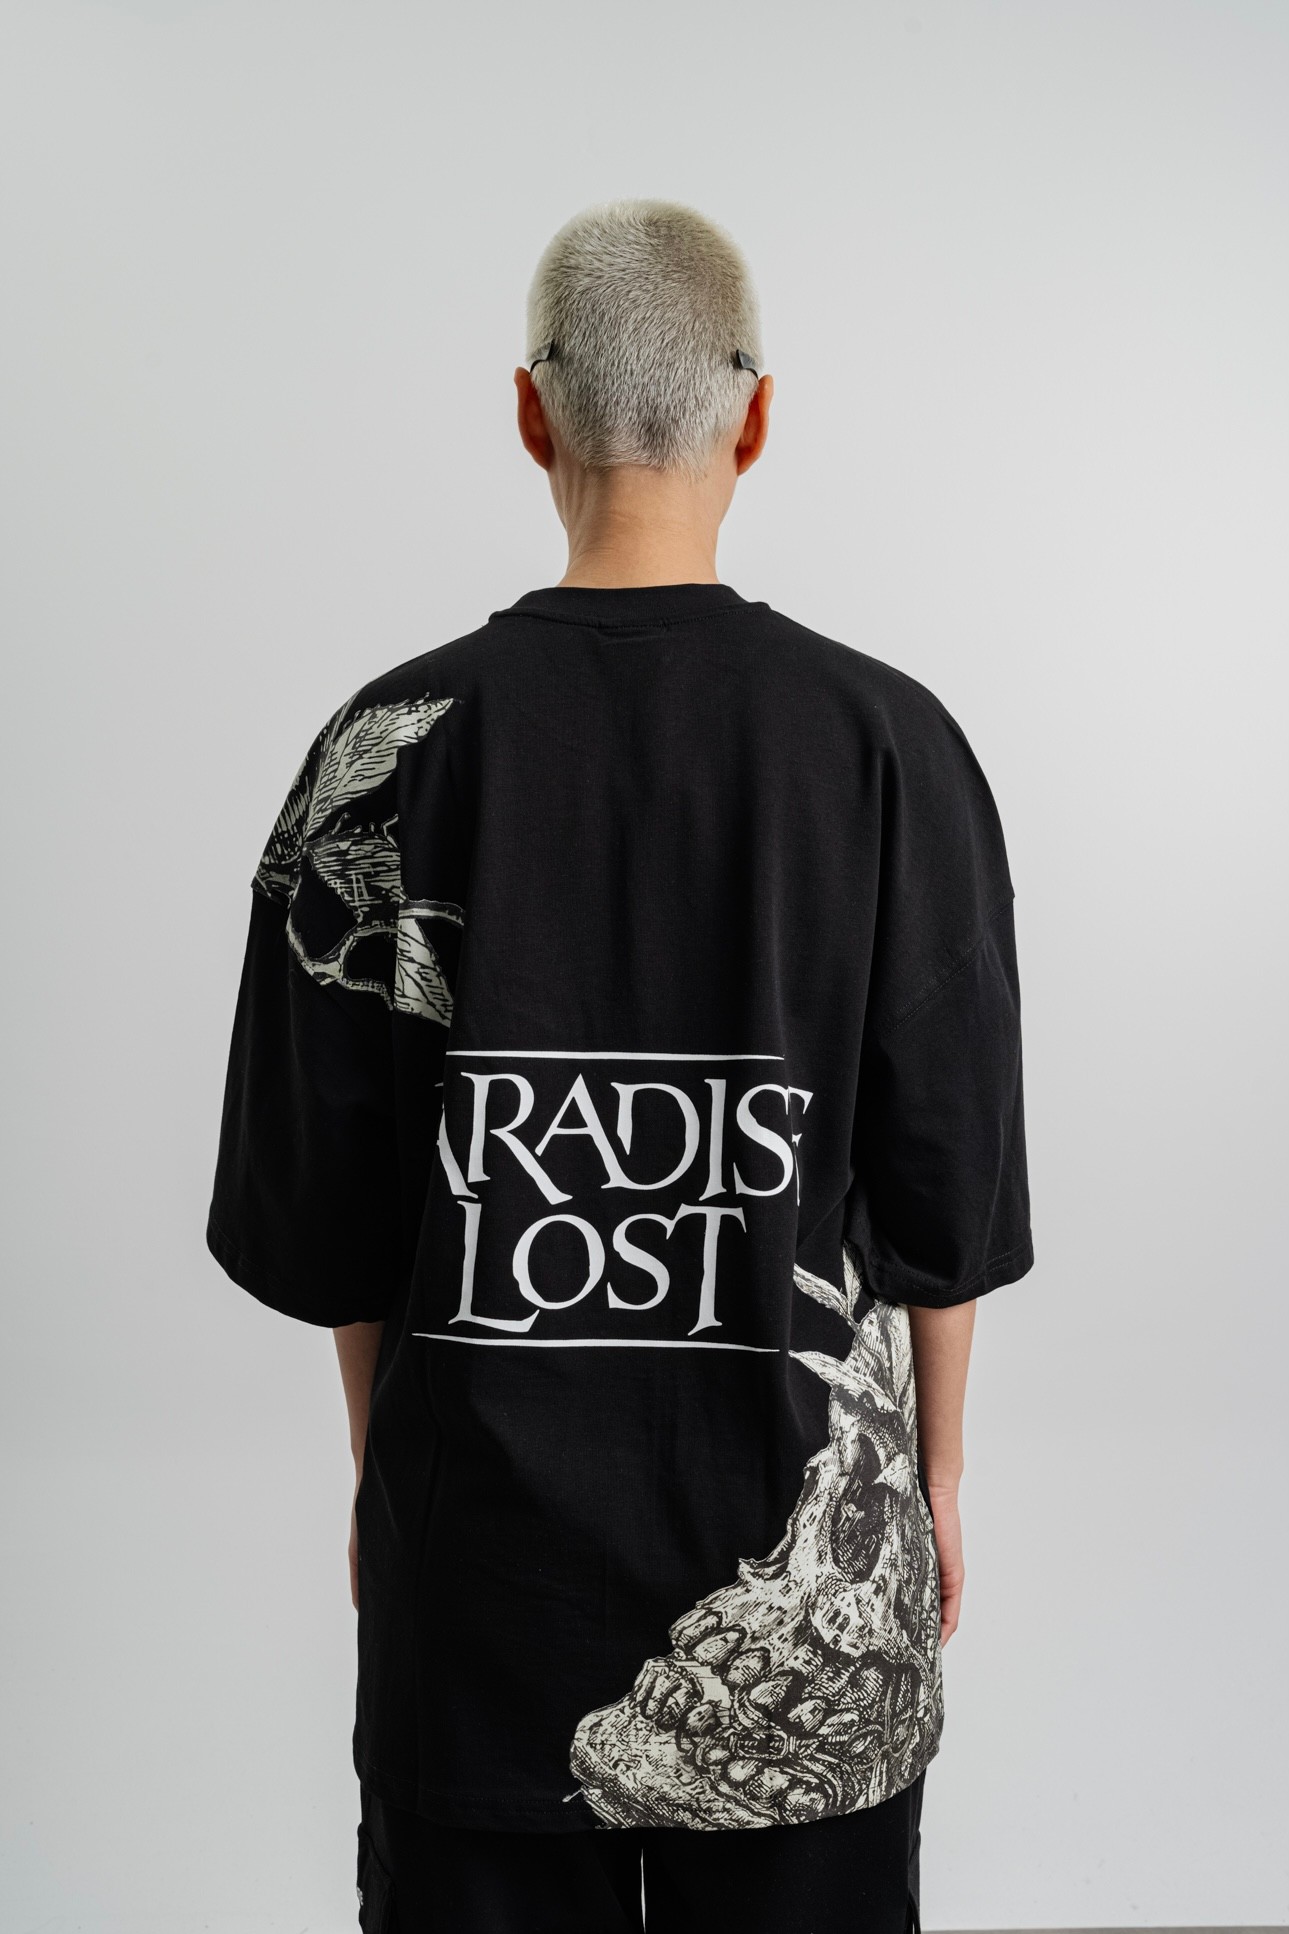 Respire Paradise Lost Baskılı Tişört